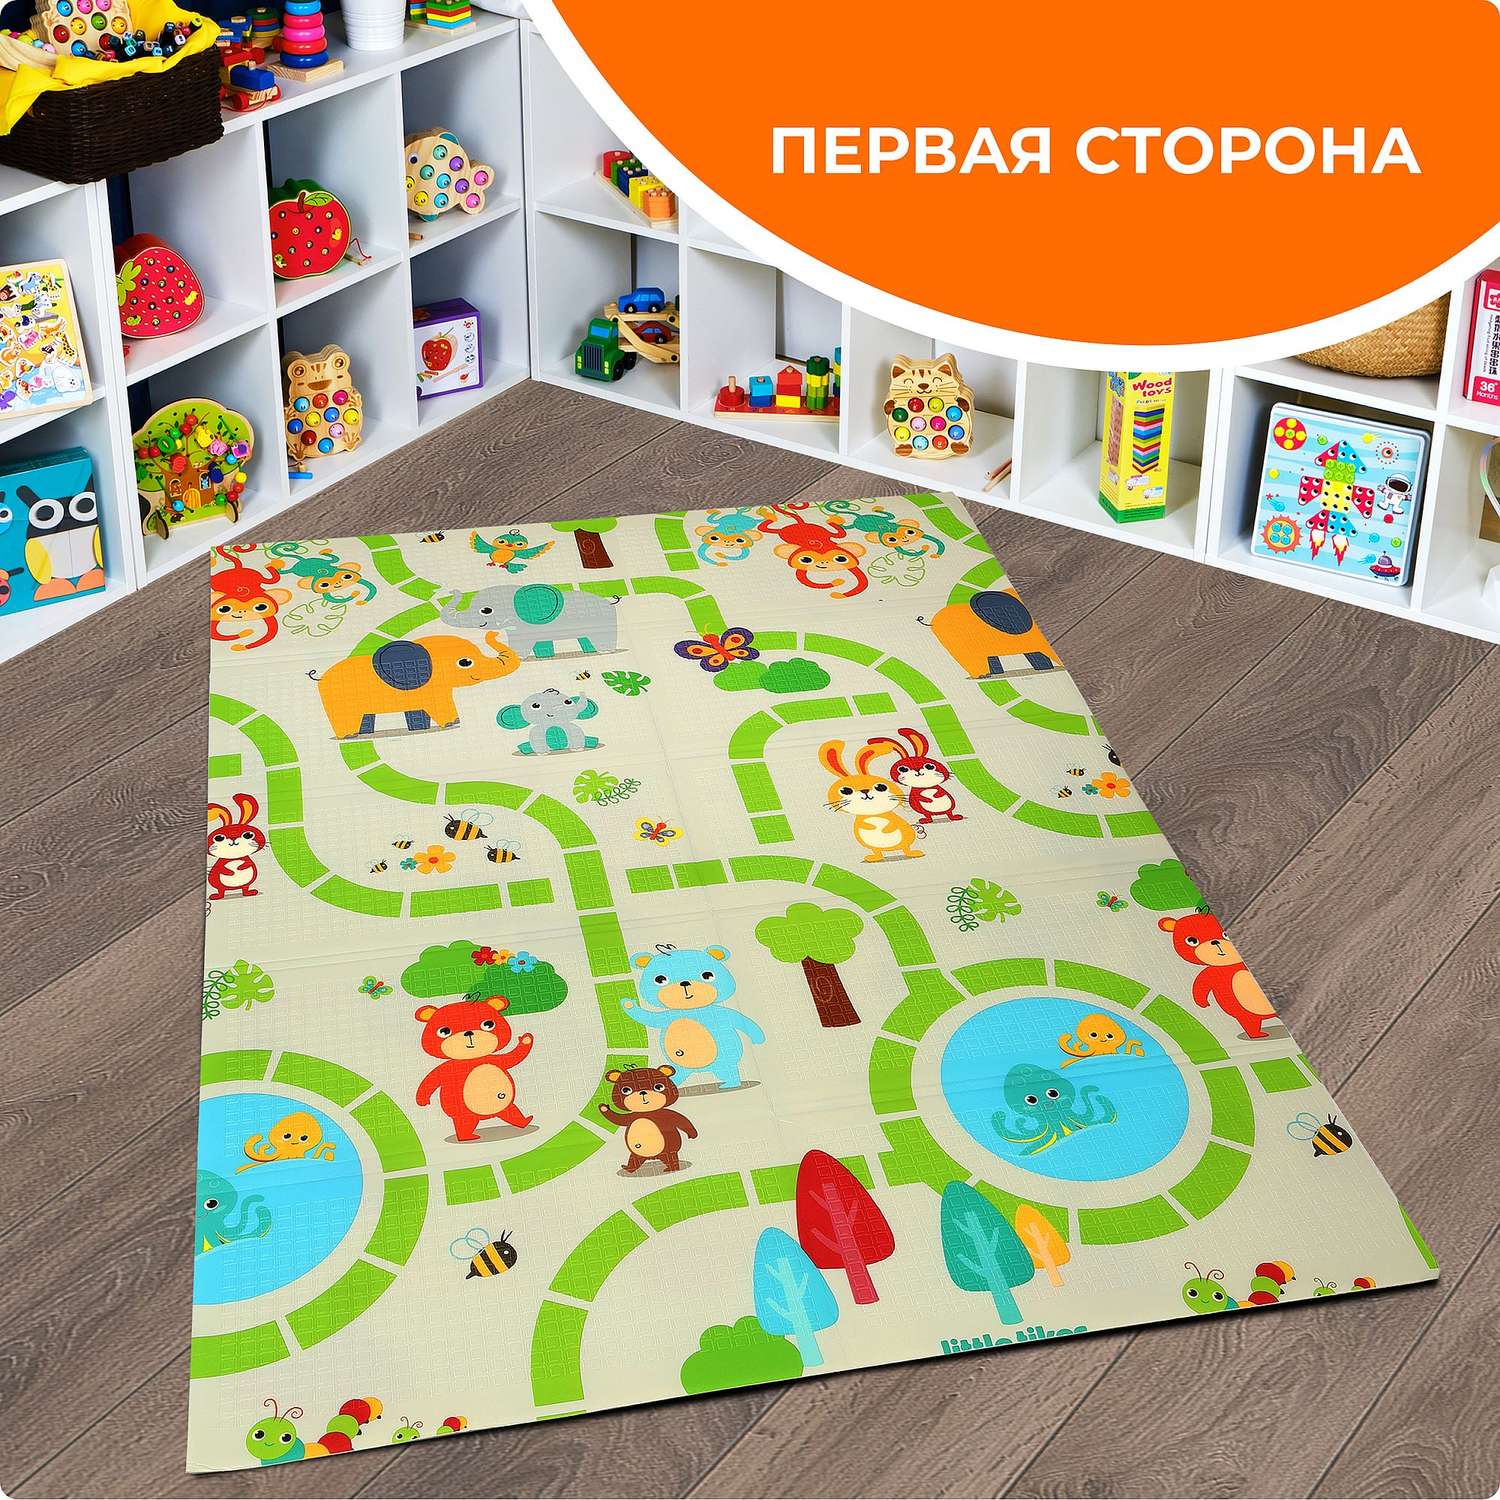 В нашем магазине можно купить ковры и детские коврики